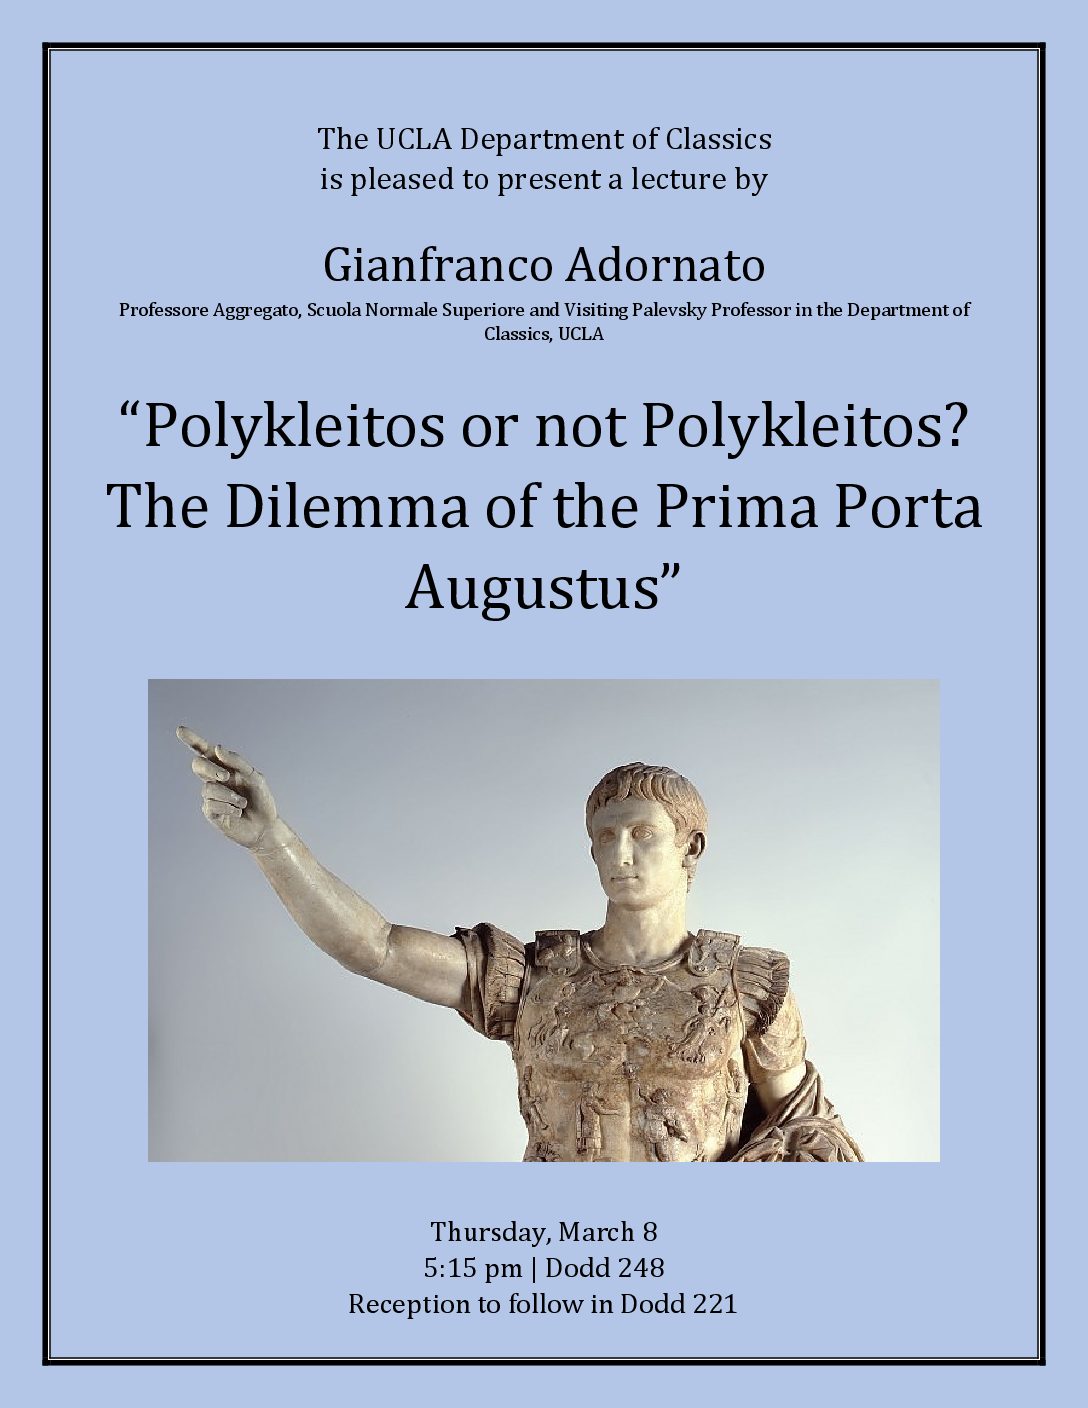 Prof. Adornato, coordinator of the Oltreplinio Project, will take a lecture on the Prima Porta Augustus at UCLA